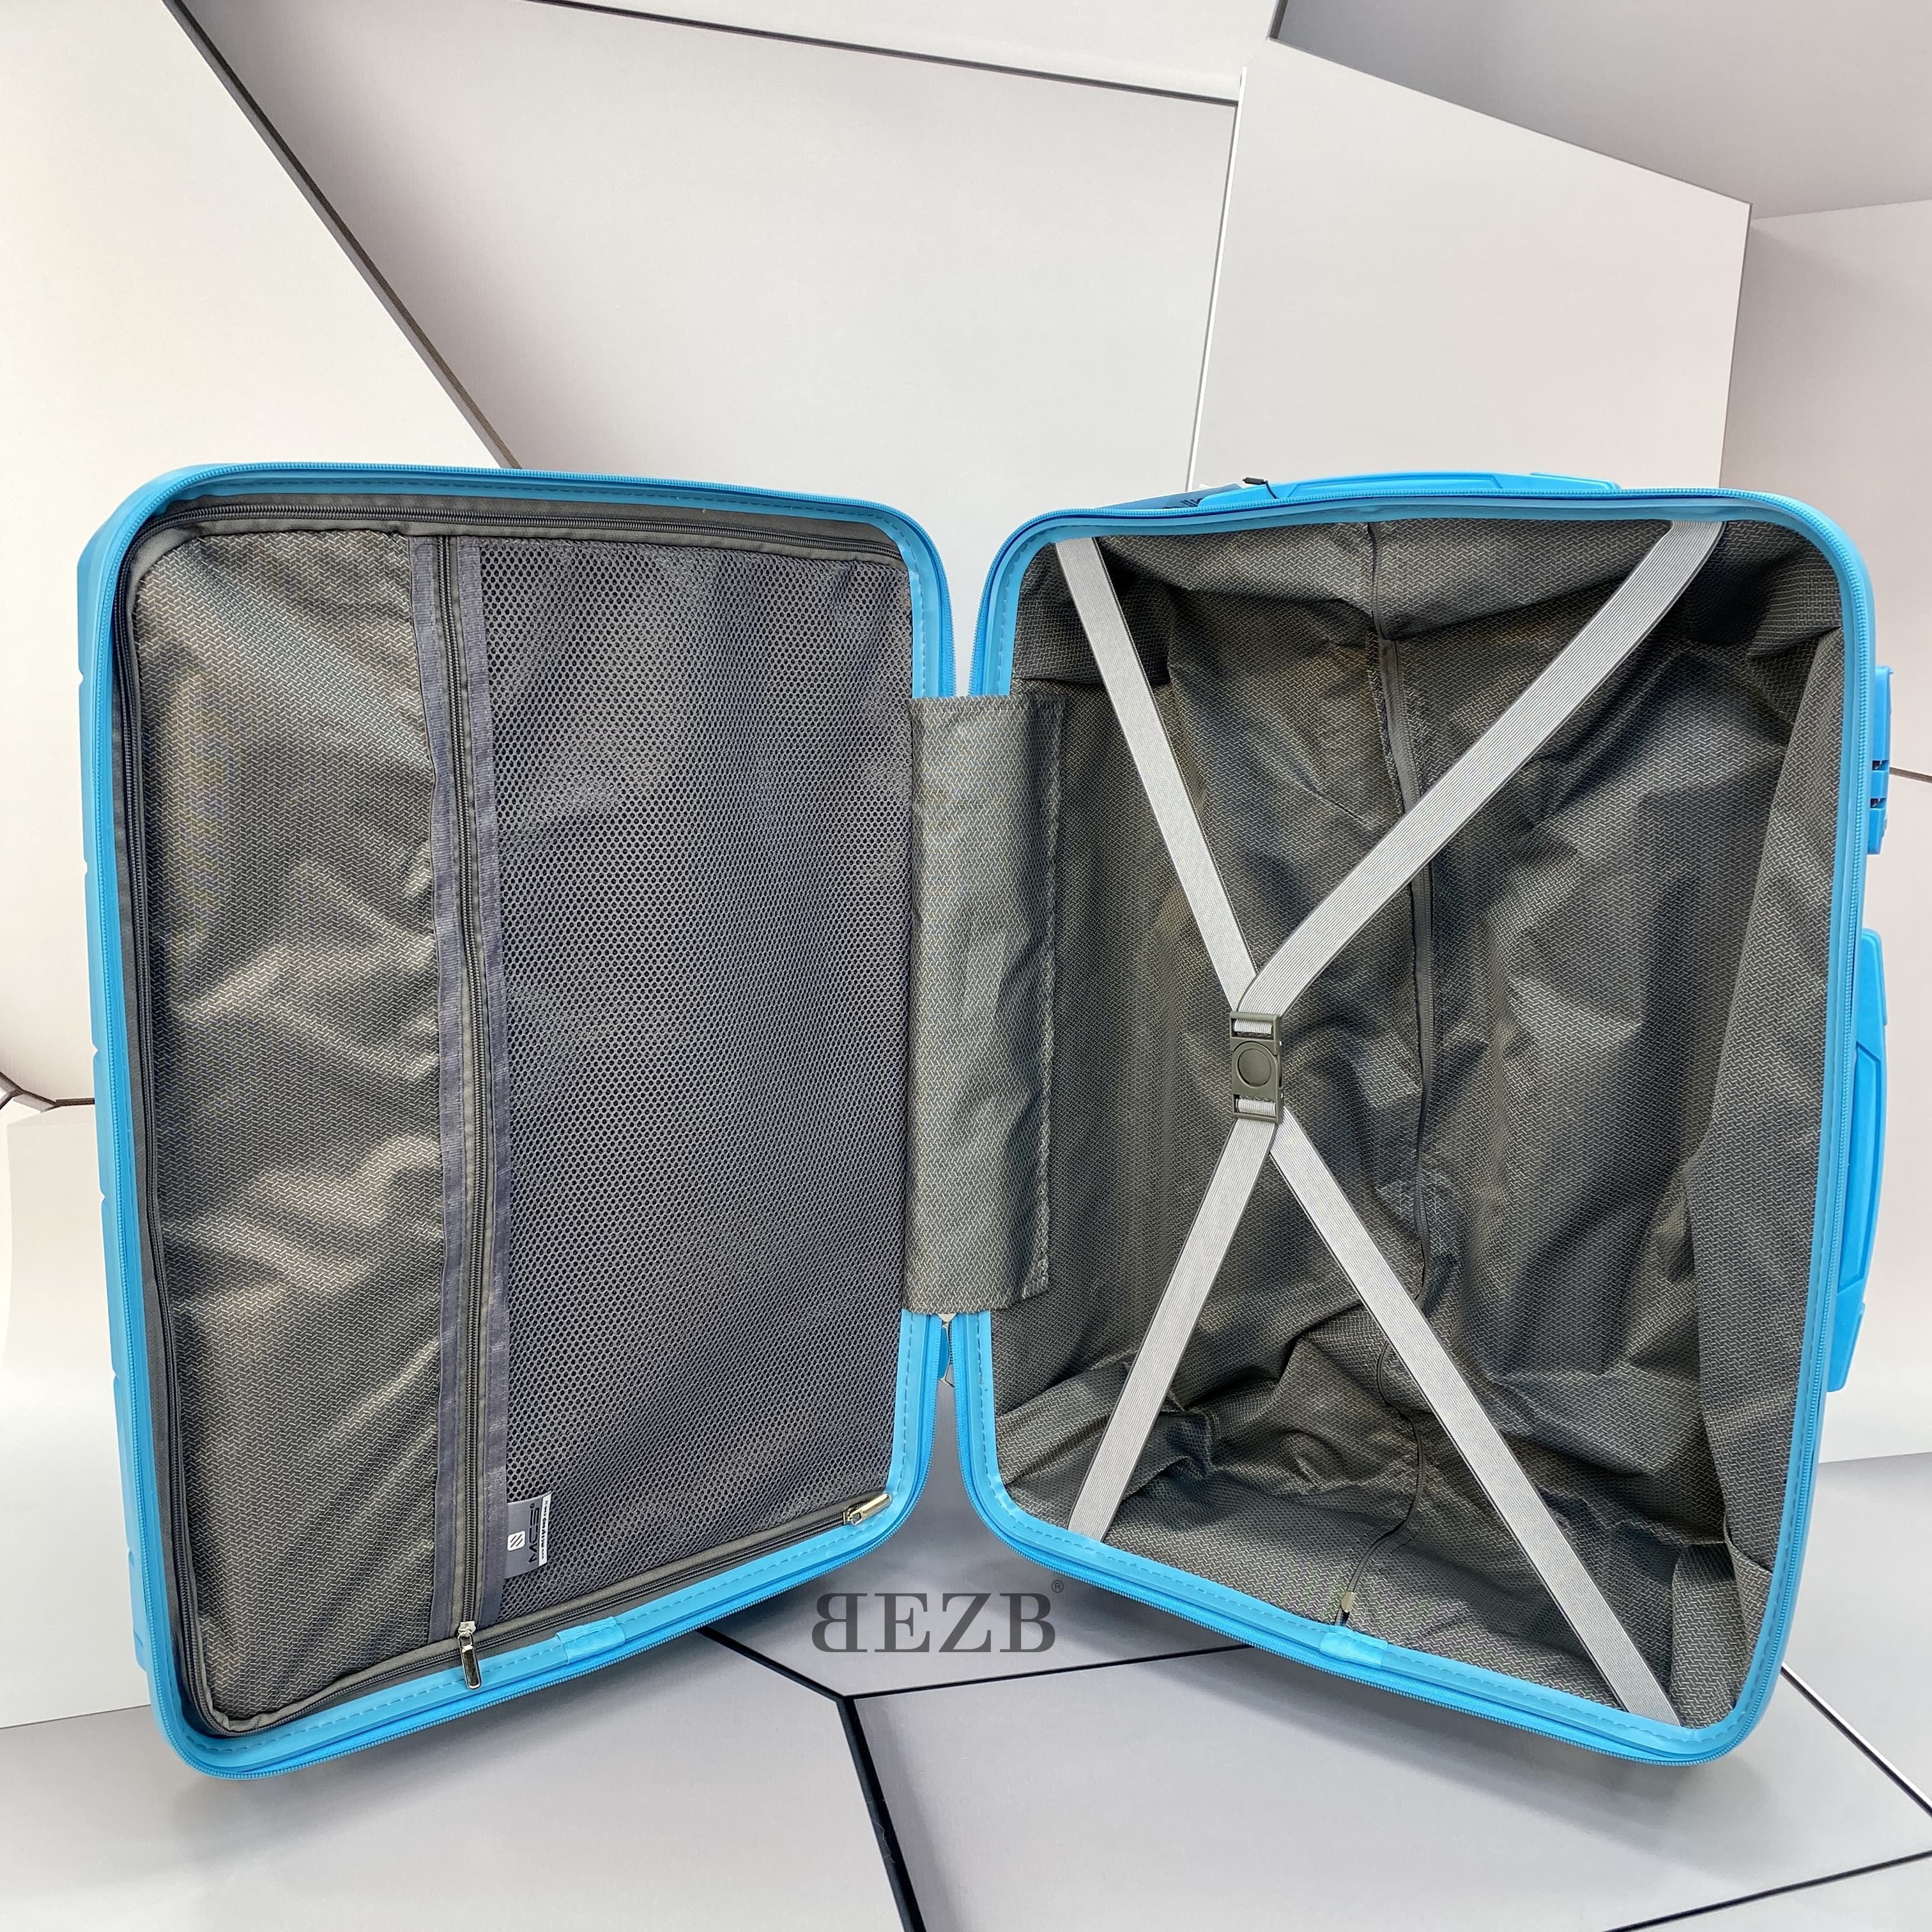 Маленький чемодан для ручьной клади из полипропилена MCS V366 S L. BLUE! Для 8-10 кг! - 2